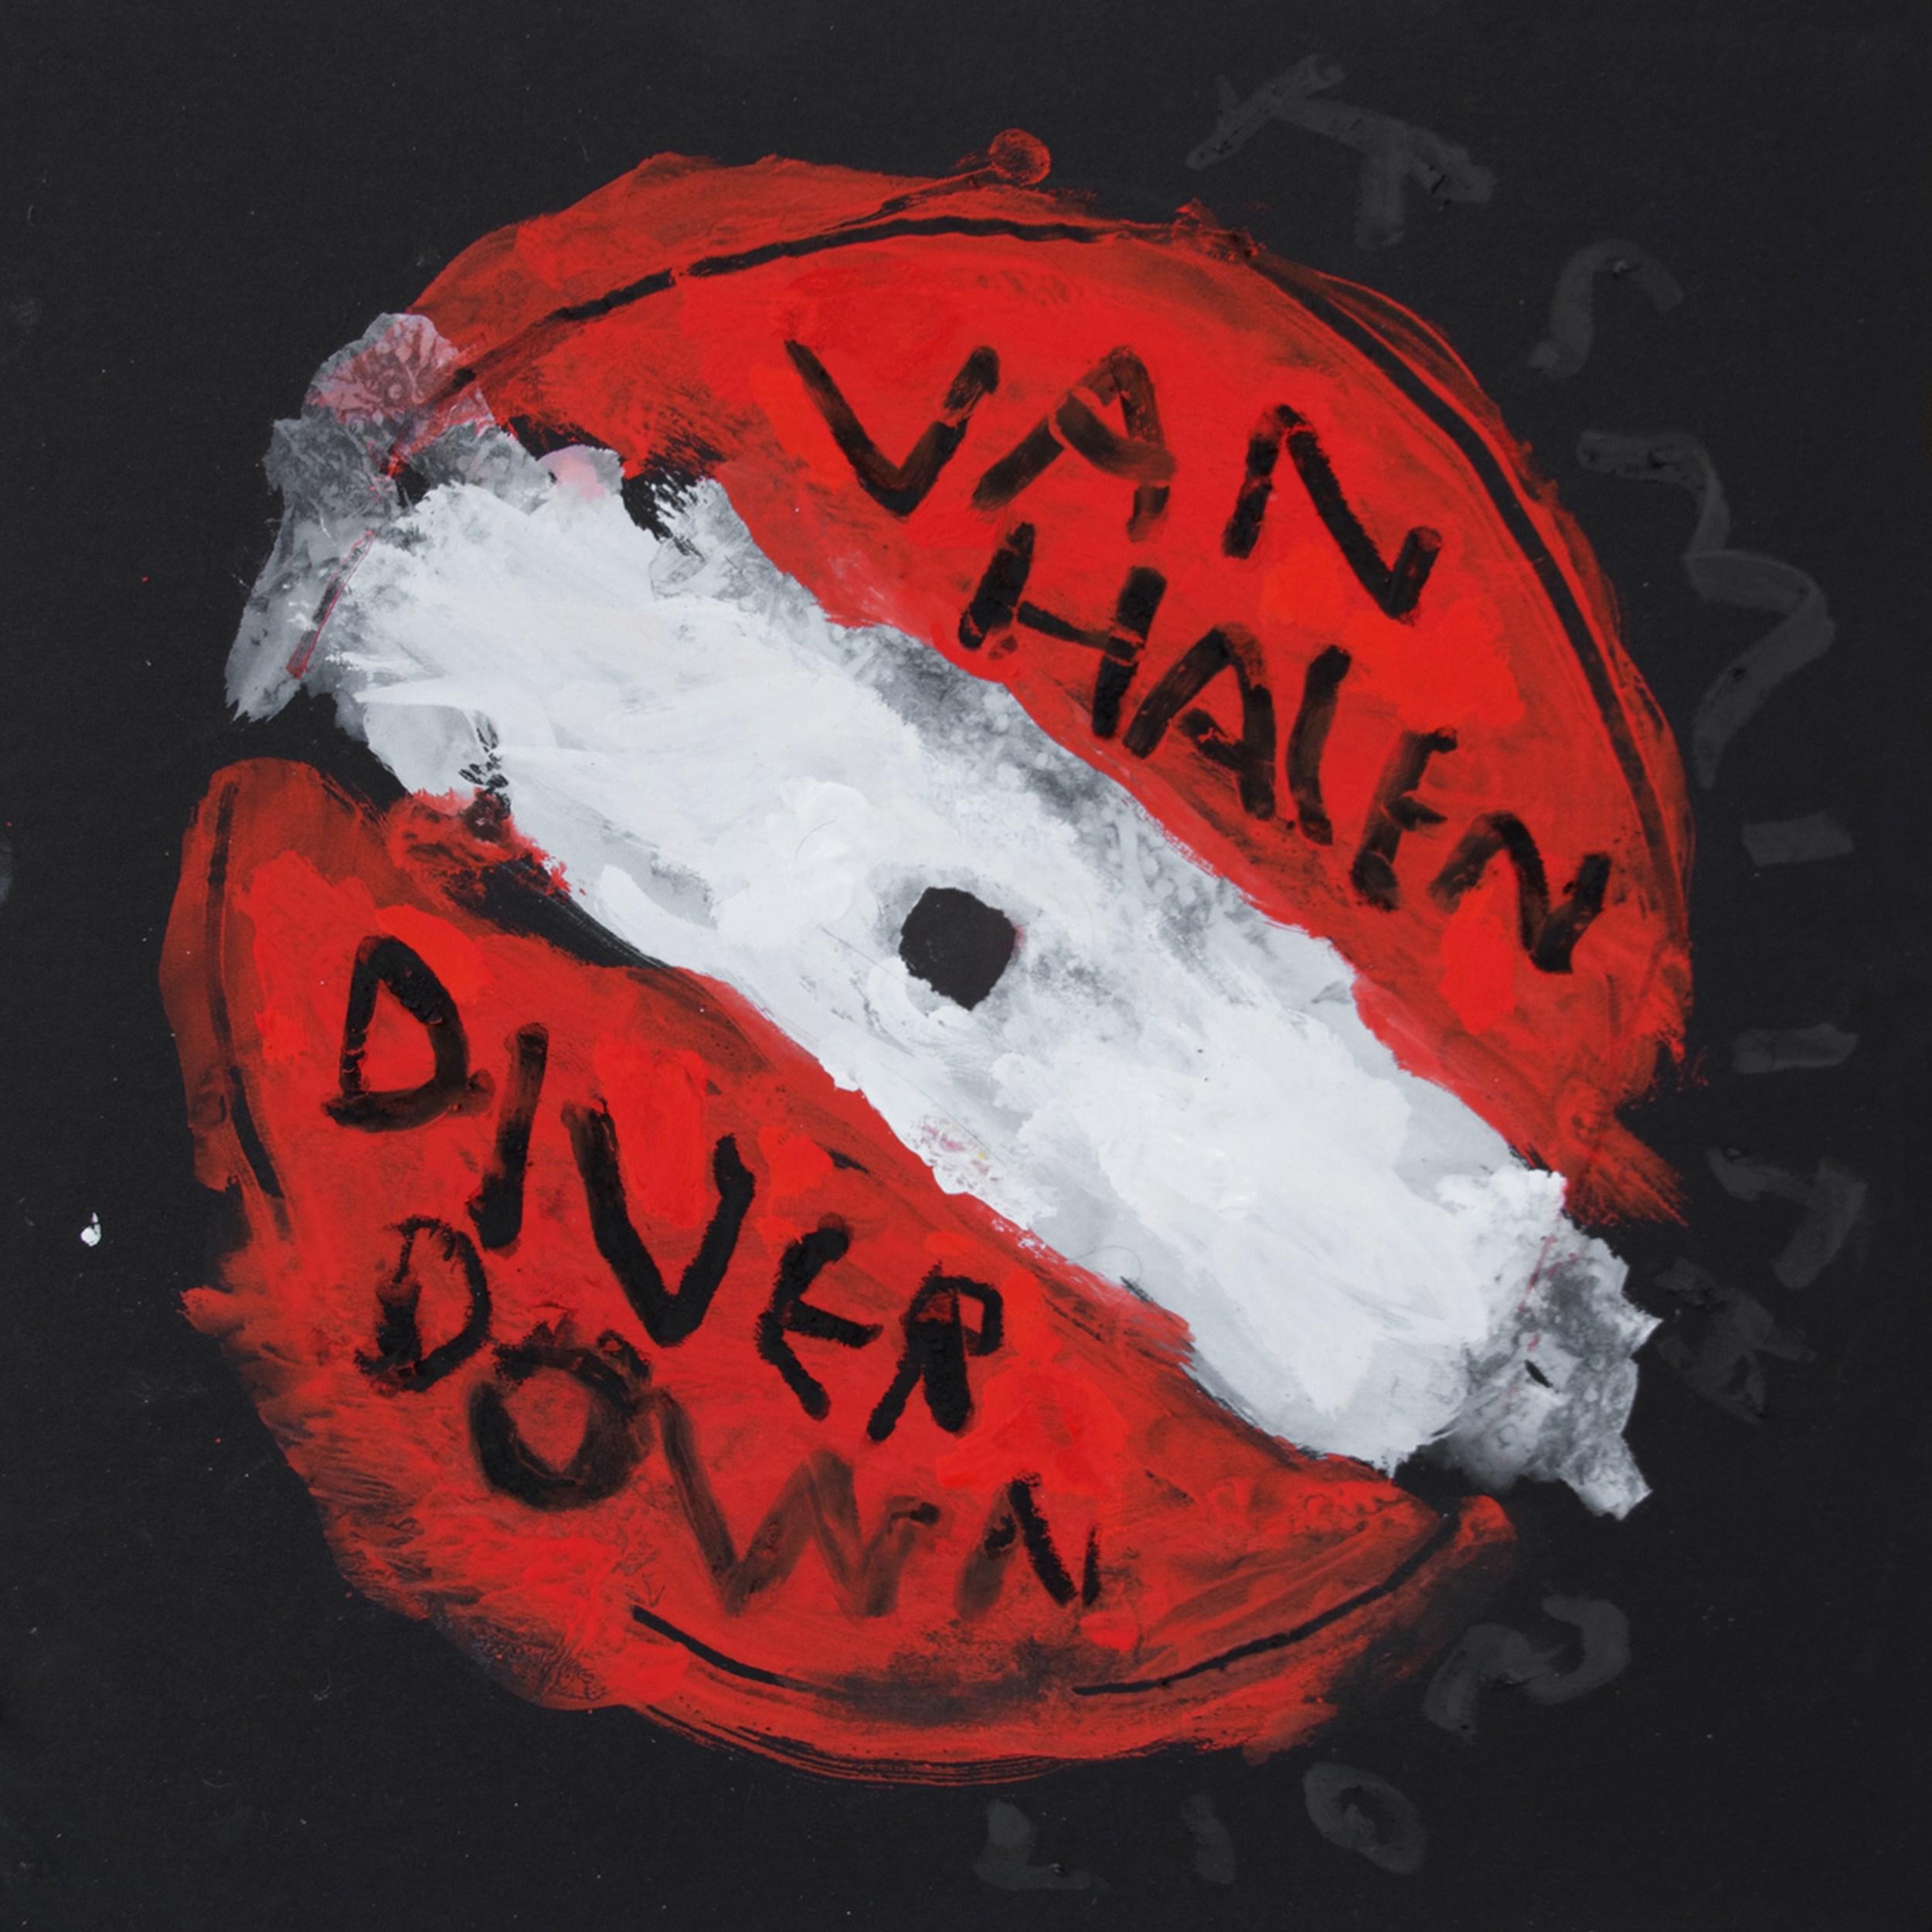 Abstract Painting Kerry Smith - Van Halen - Diver Down (étiquette d'enregistrement, setlists, pop art contemporain)